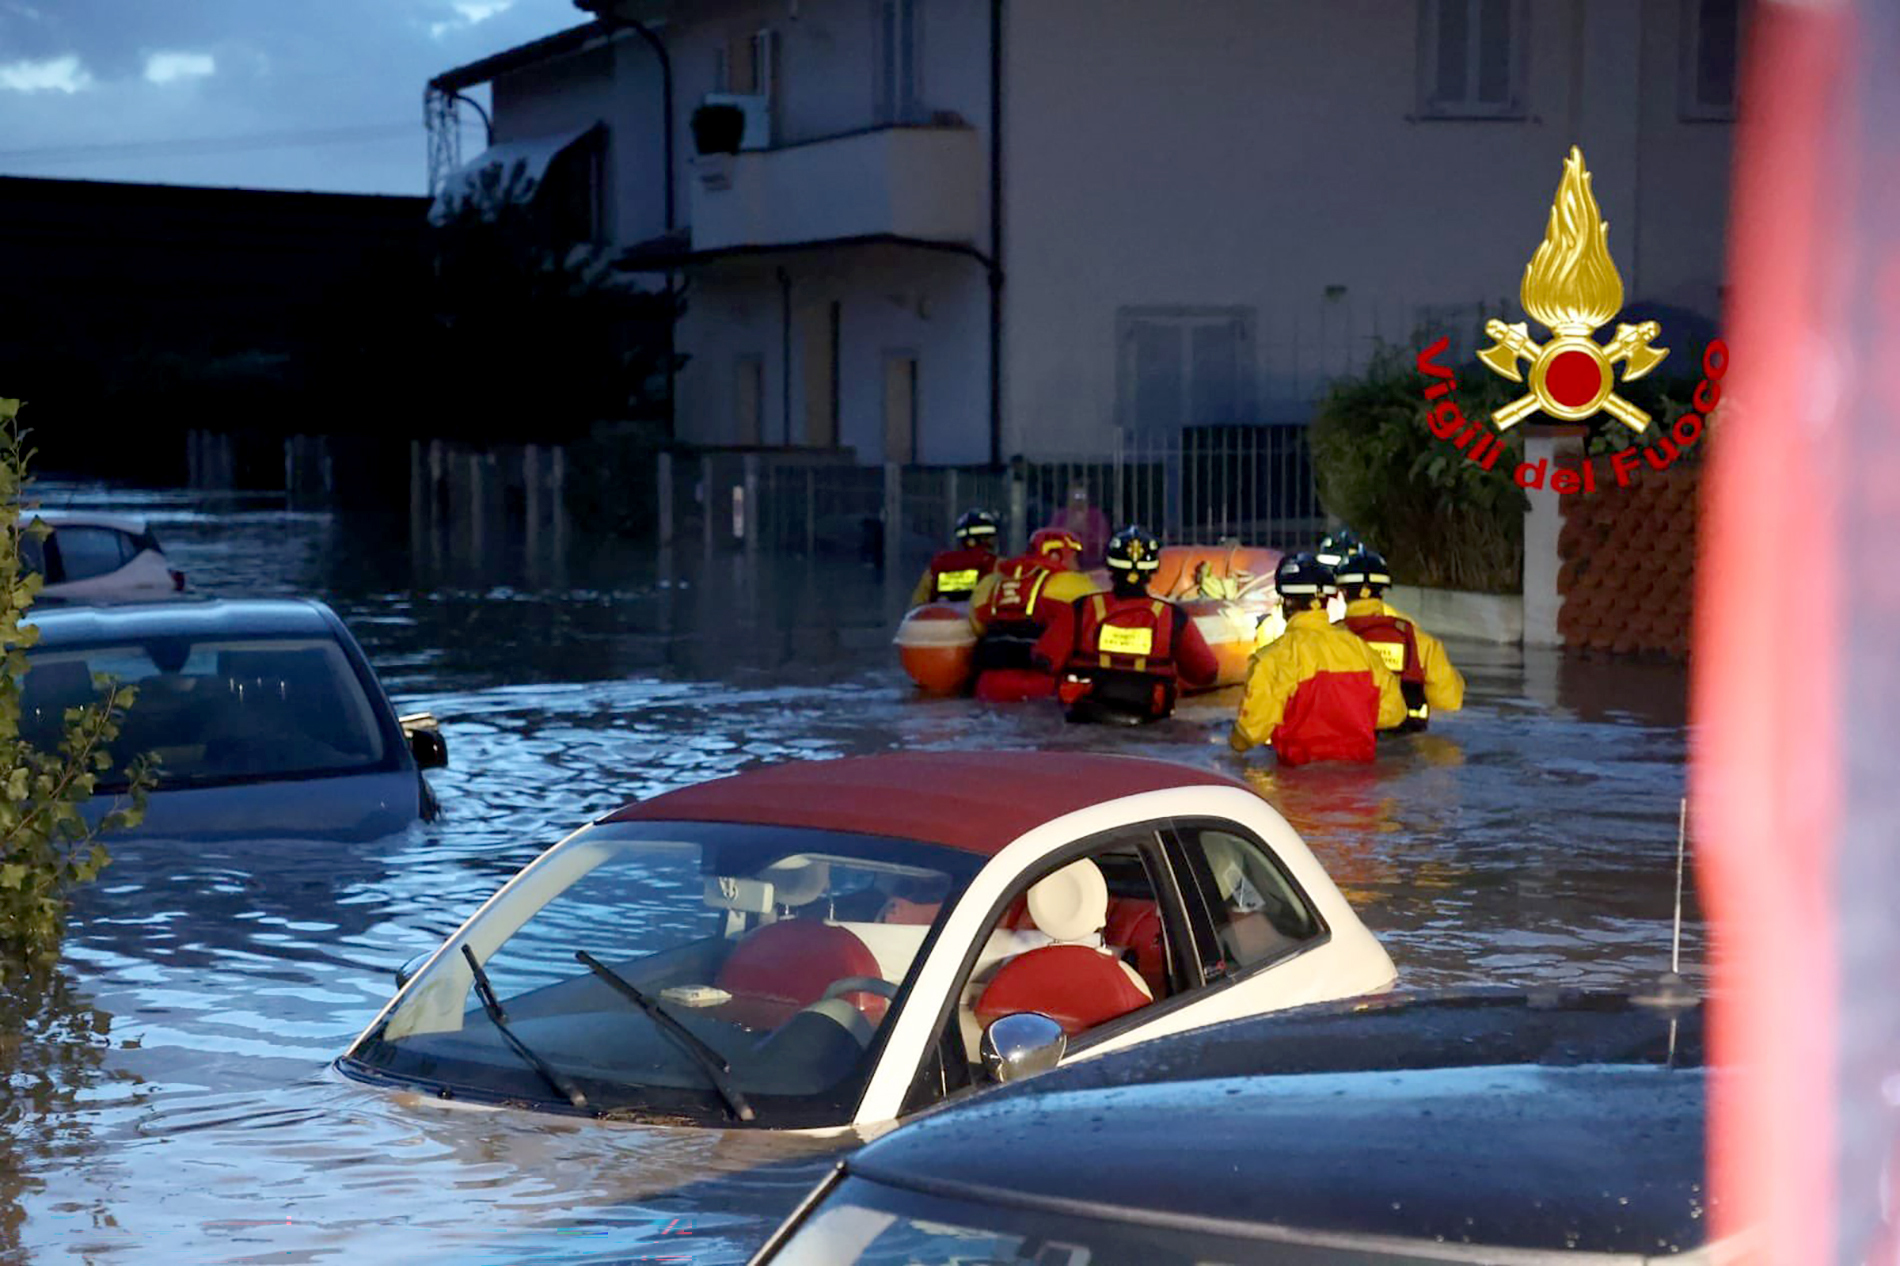 Feuerwehrleute mit einem Schlauchboot auf einer überschwemmten Straße in Lamporecchio. Von mehreren Autos ragen nur noch die Dächer aus dem Wasser.